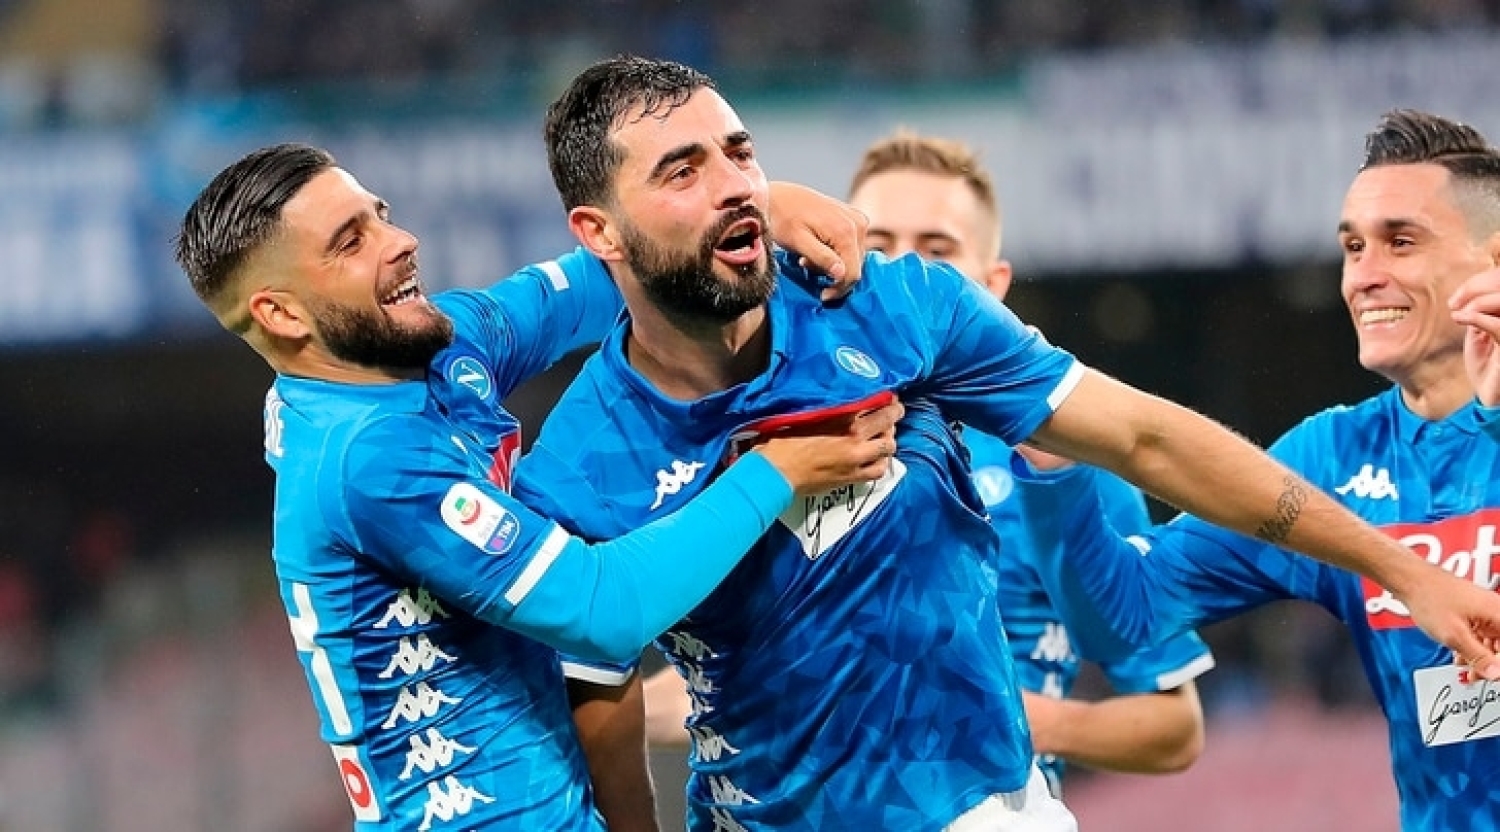 Napoli - Spal, i precedenti: due vittorie per 1 - 0 negli ultimi due match al "San Paolo" contro i ferraresi